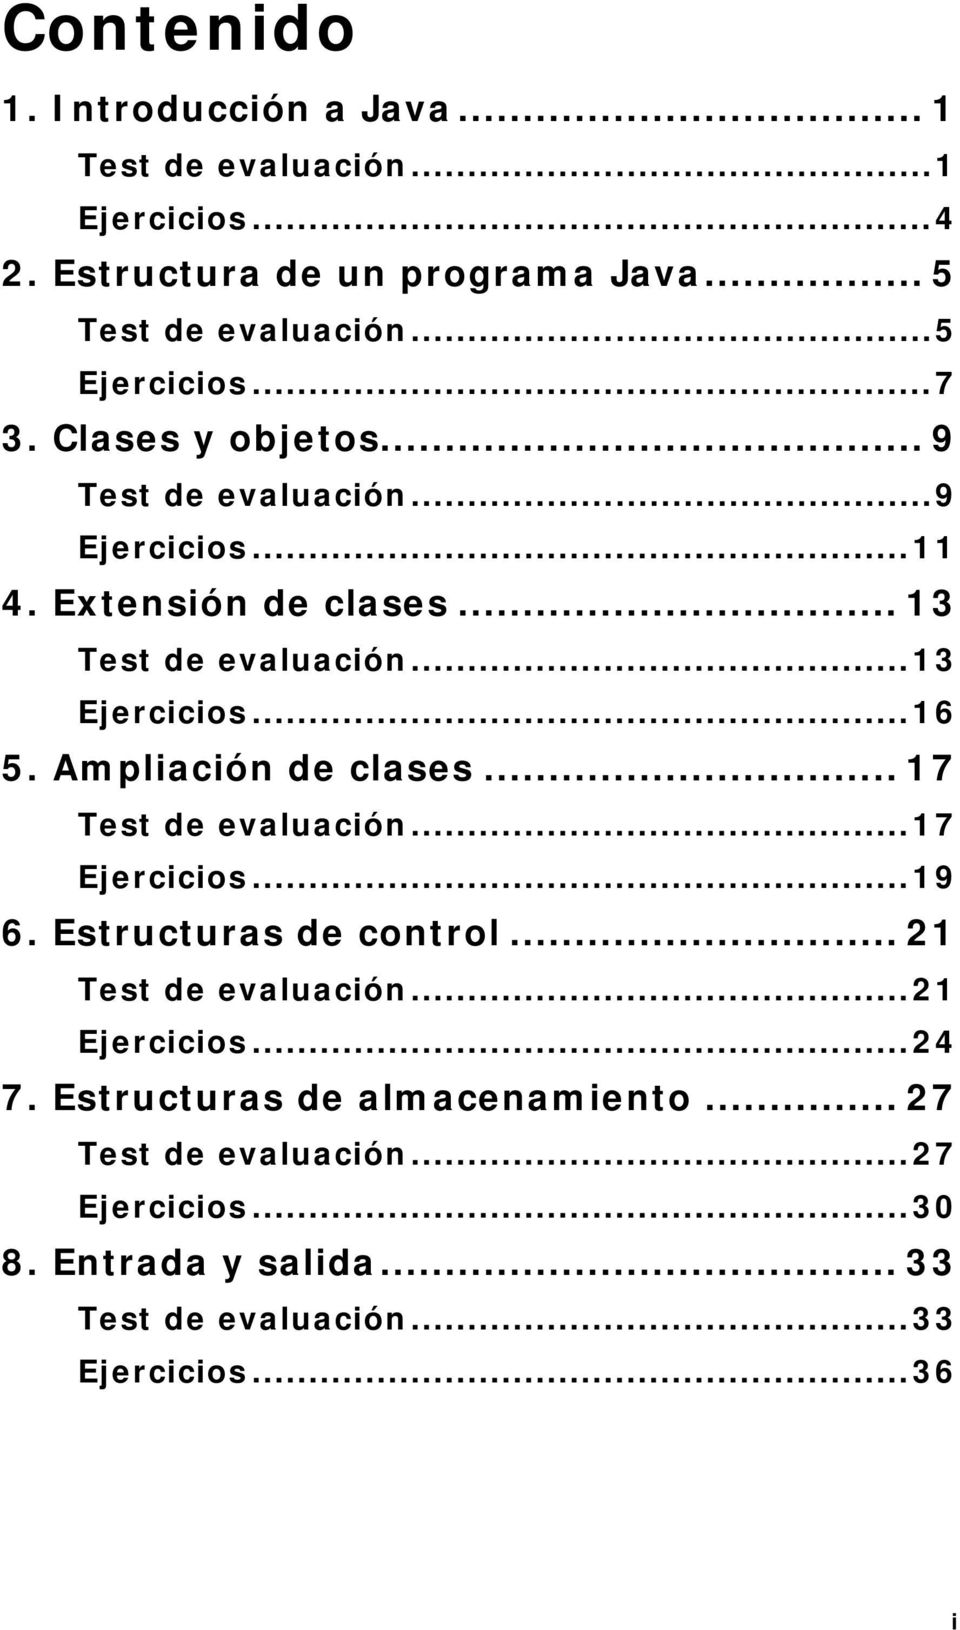 ..13 Ejercicios...16 5. Ampliación de clases... 17 Test de evaluación...17 Ejercicios...19 6. Estructuras de control... 21 Test de evaluación.